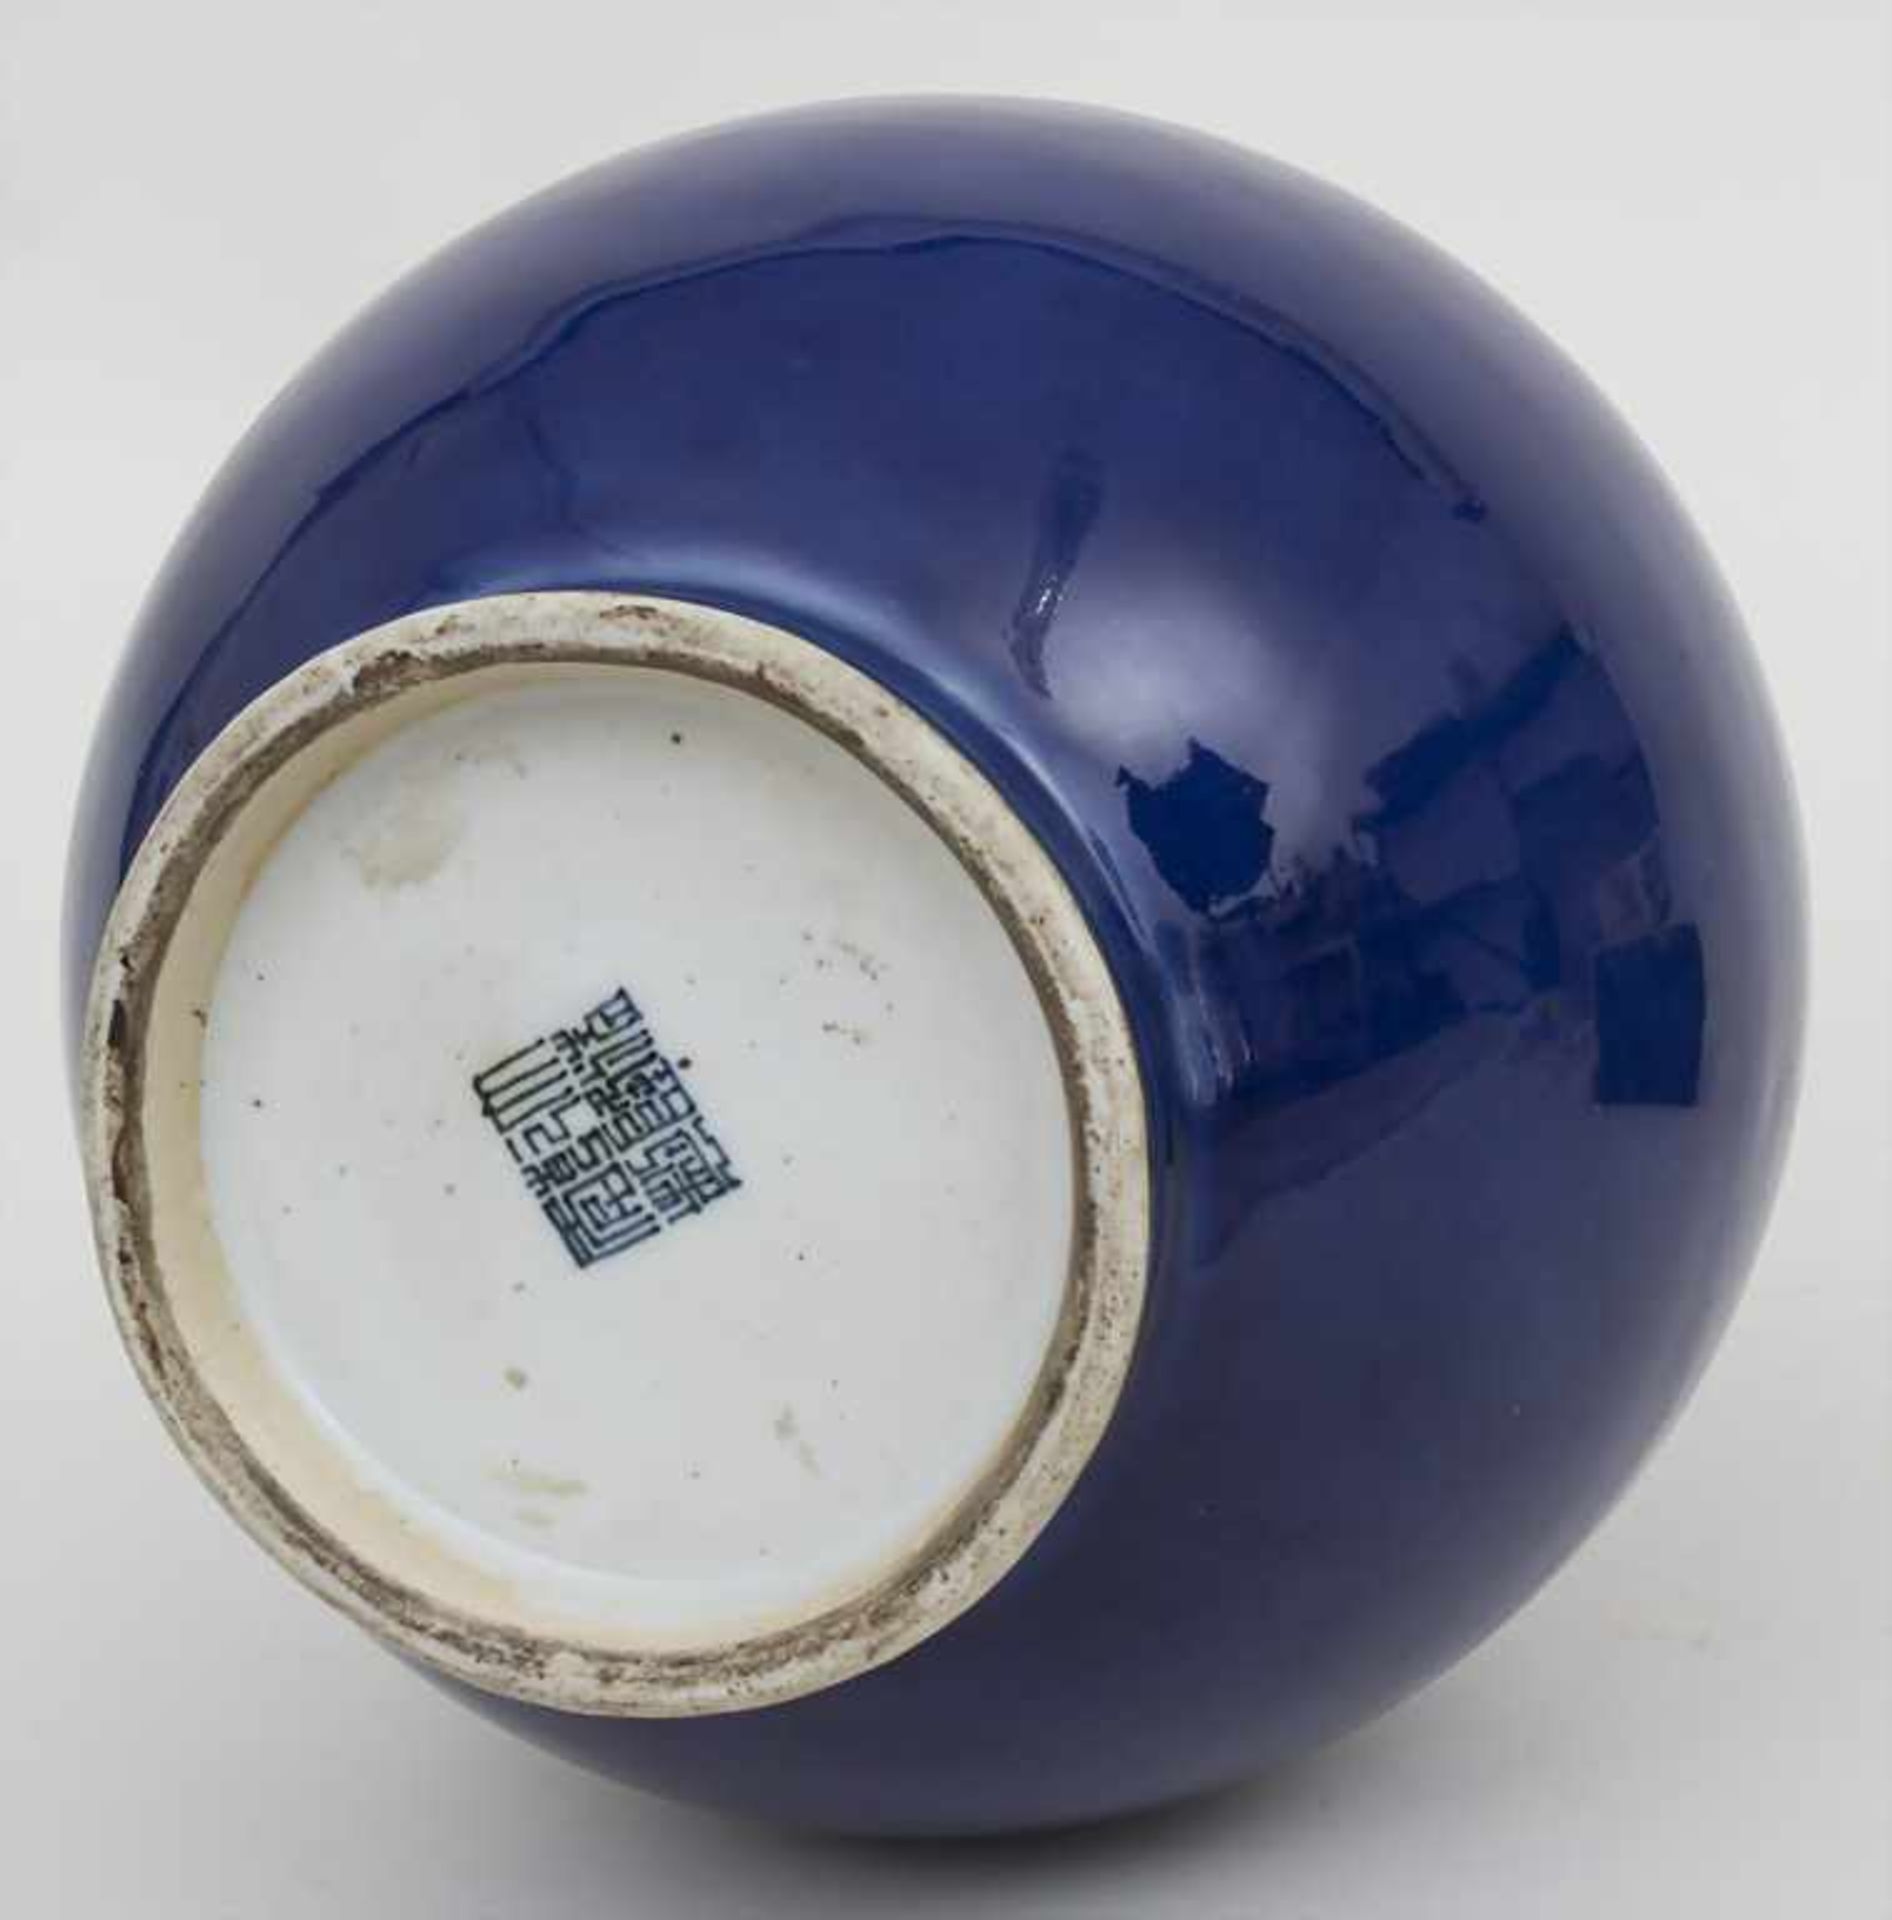 Puderblaue Porzellan-Vase / A powder blue porcelain vase, China, 18. Jh.Material: Porzellan, - Image 3 of 4